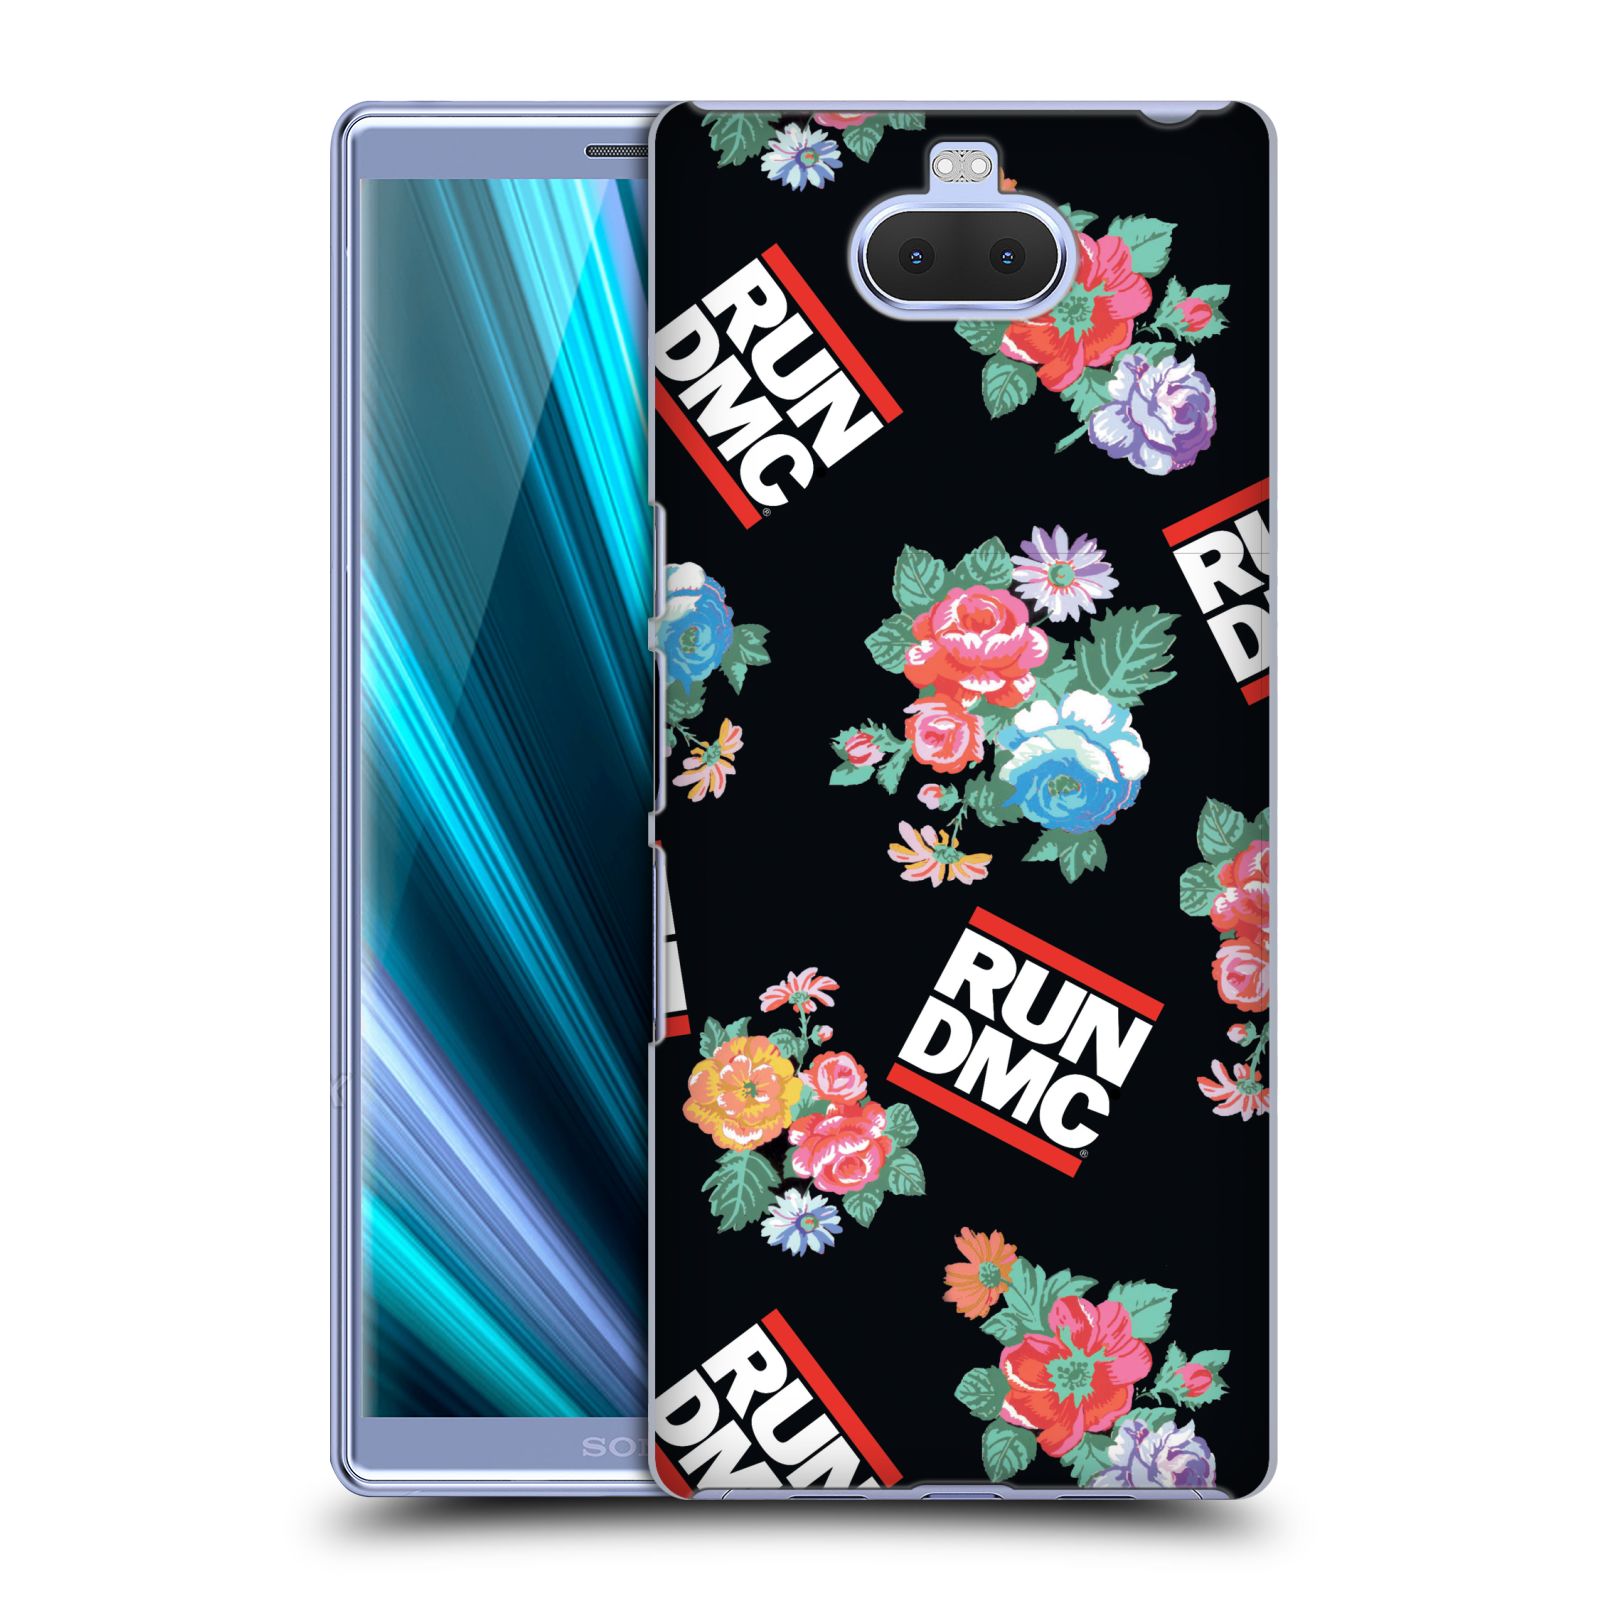 Pouzdro na mobil Sony Xperia 10 Plus - Head Case - rapová kapela Run DMC květiny černé pozadí